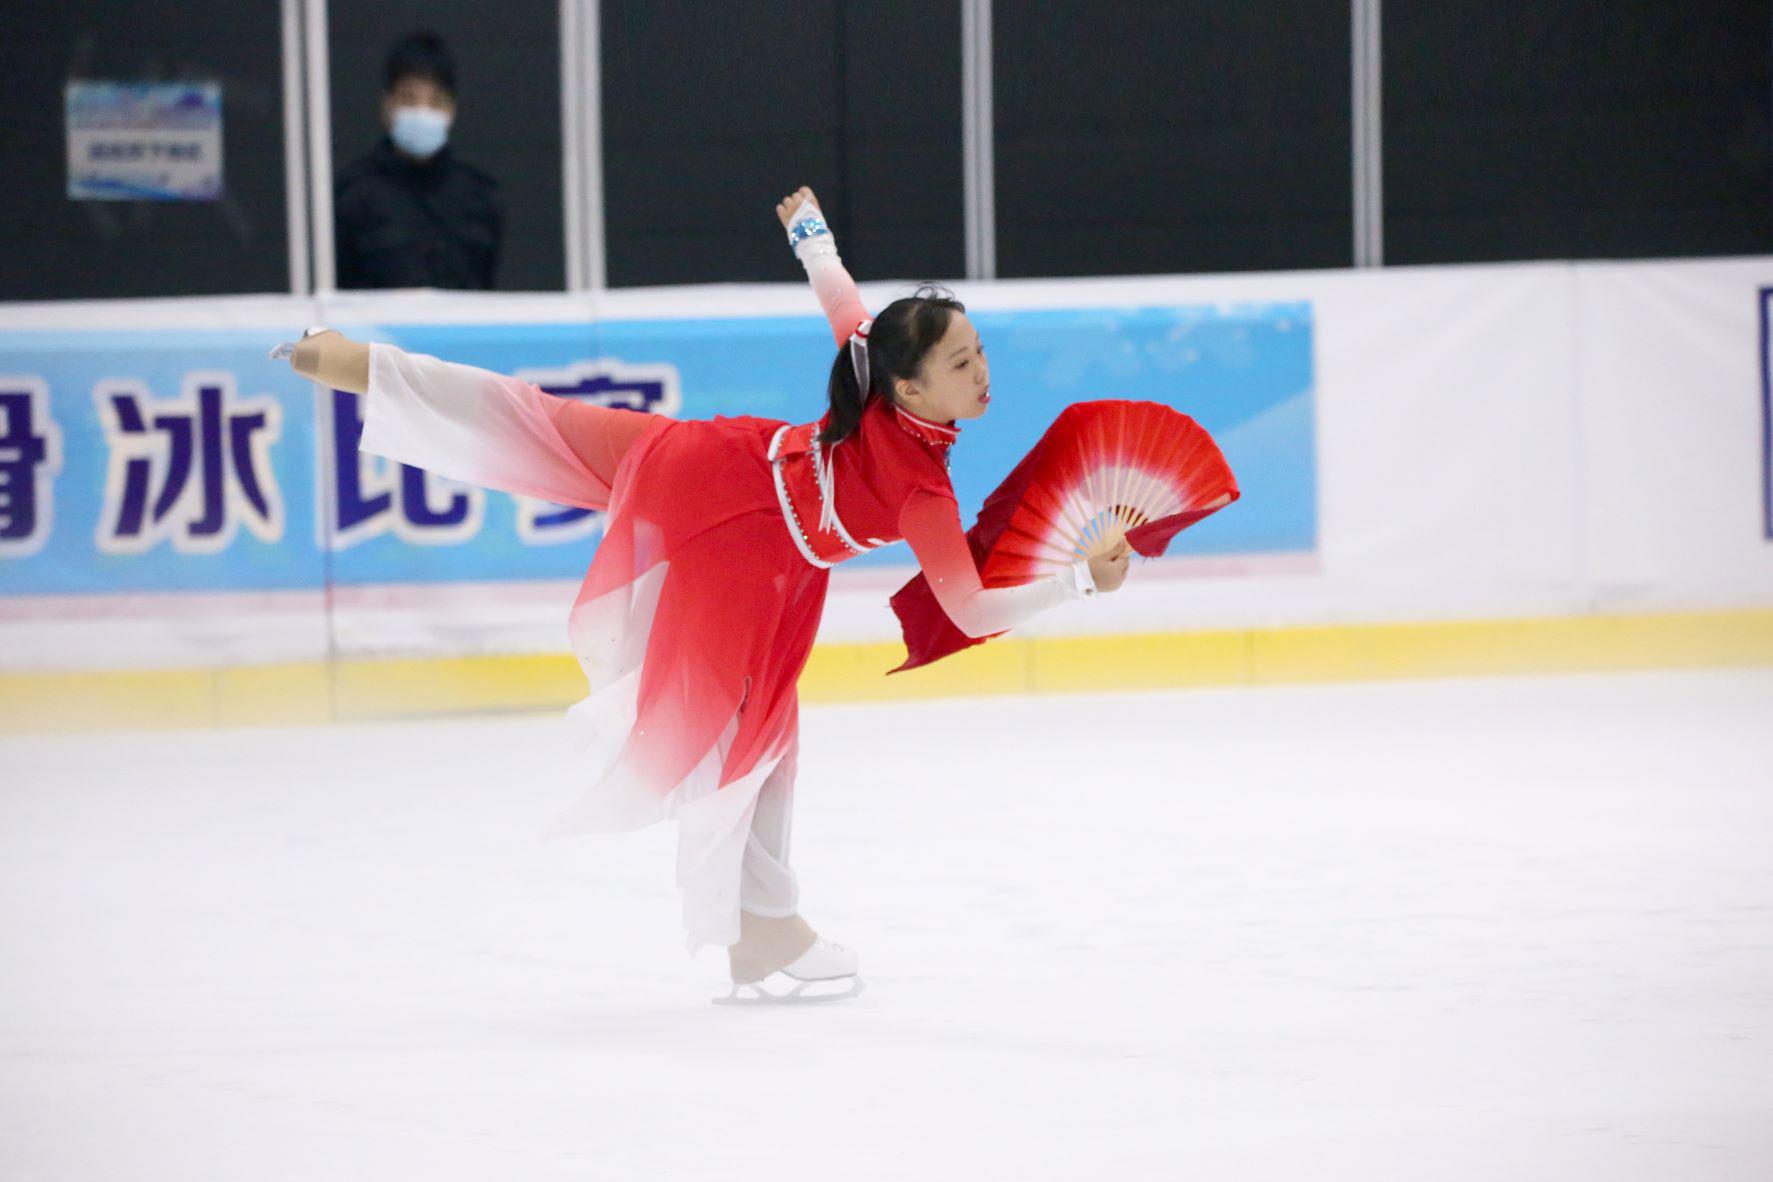 北京市各级体育组织谋划后冬奥时代冰雪运动发展